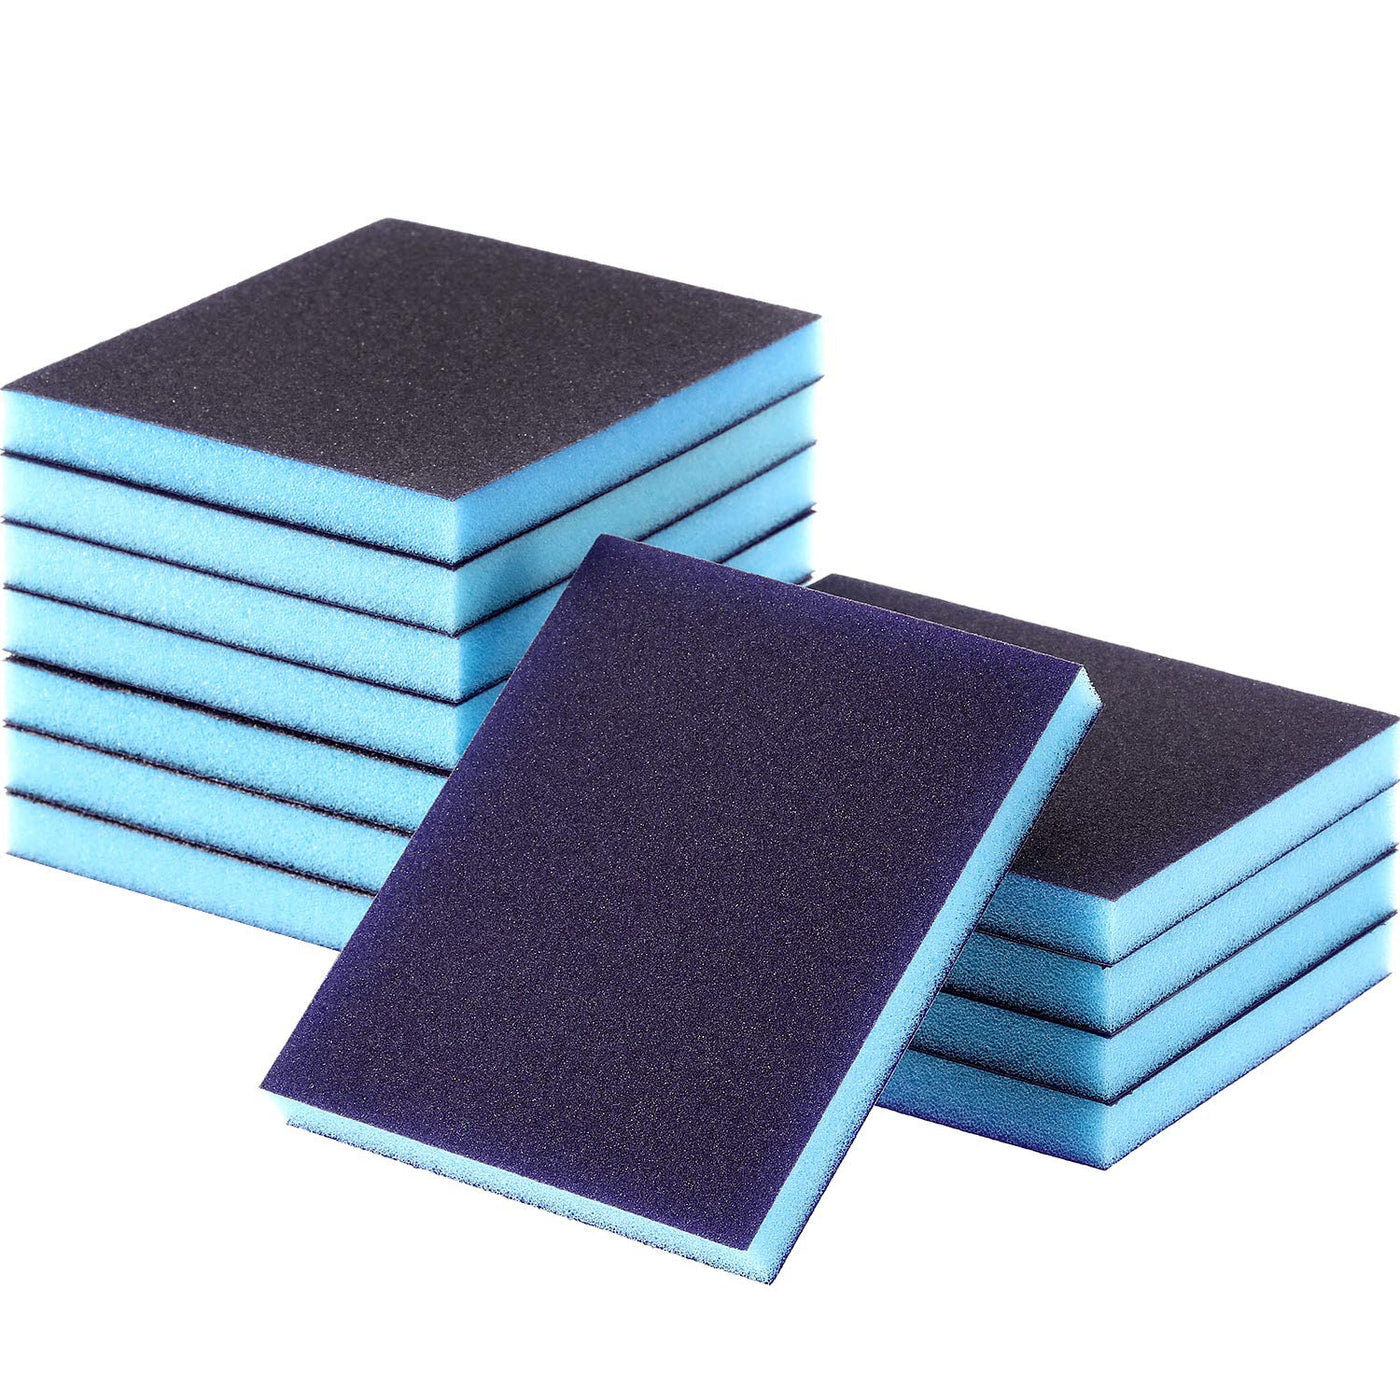 6PCS Drywall Sanding Sponge Blocks Kit Washable and Reusable Multi